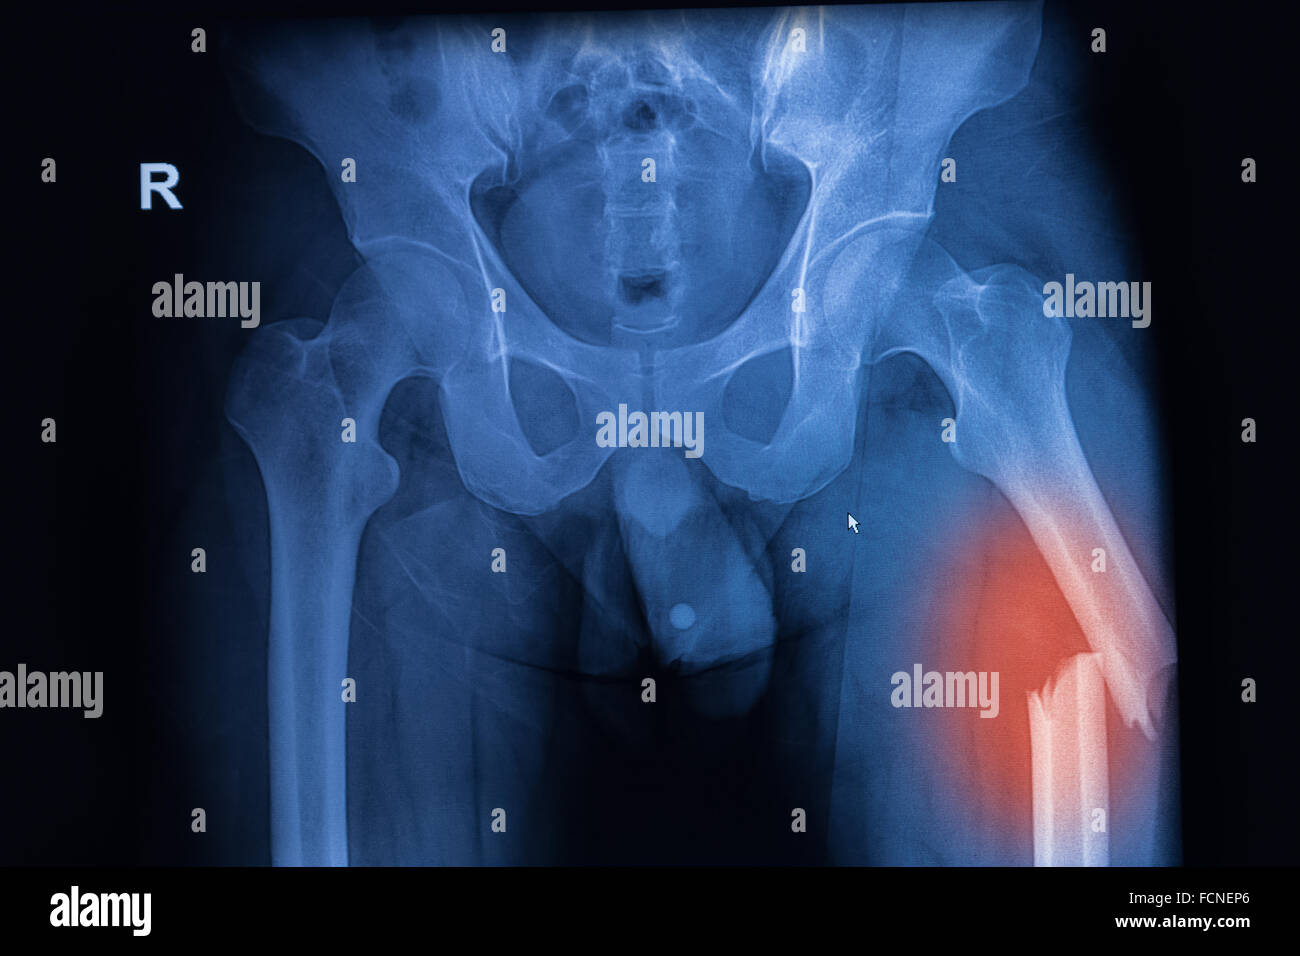 Immagine a raggi X di sia alla moda che mostra la frattura del femore al lato sinistro Foto Stock